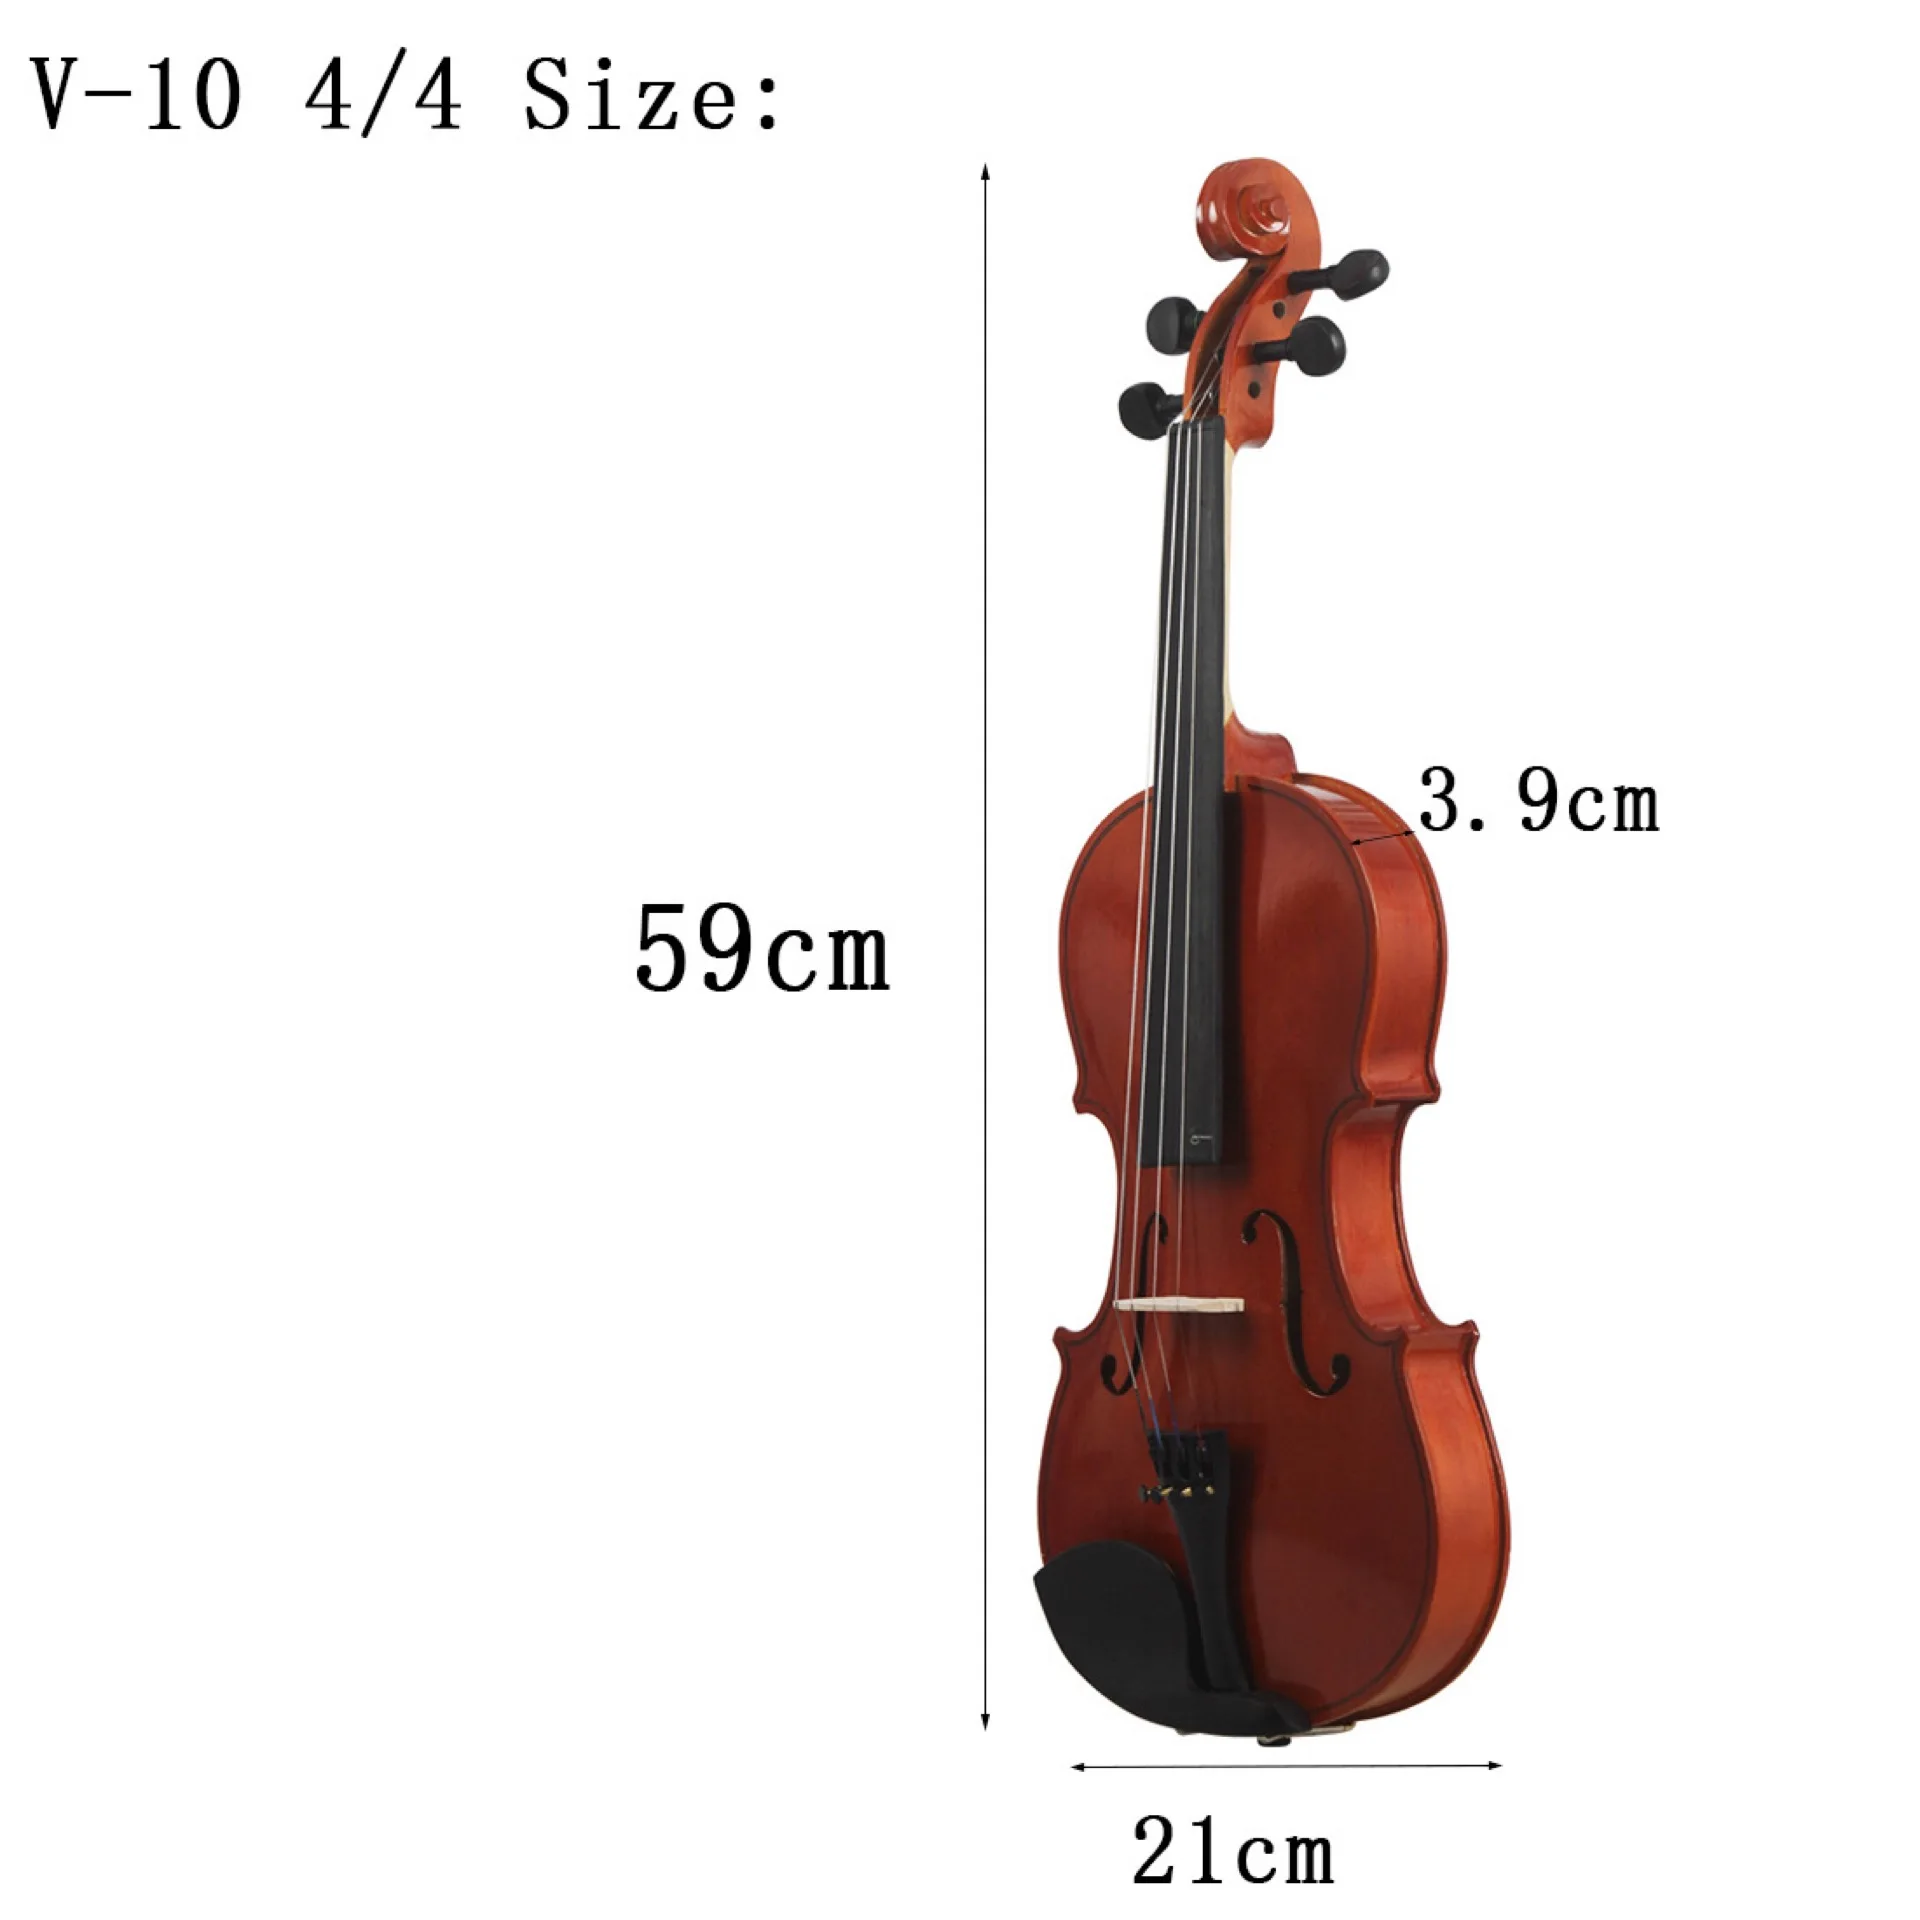 Размеры скрипки 4 4. Размер скрипки 4/4. Скрипка 1/4 размер. Размеры скрипки 4/4 в сантиметрах. Скрипка 3/4 размер.